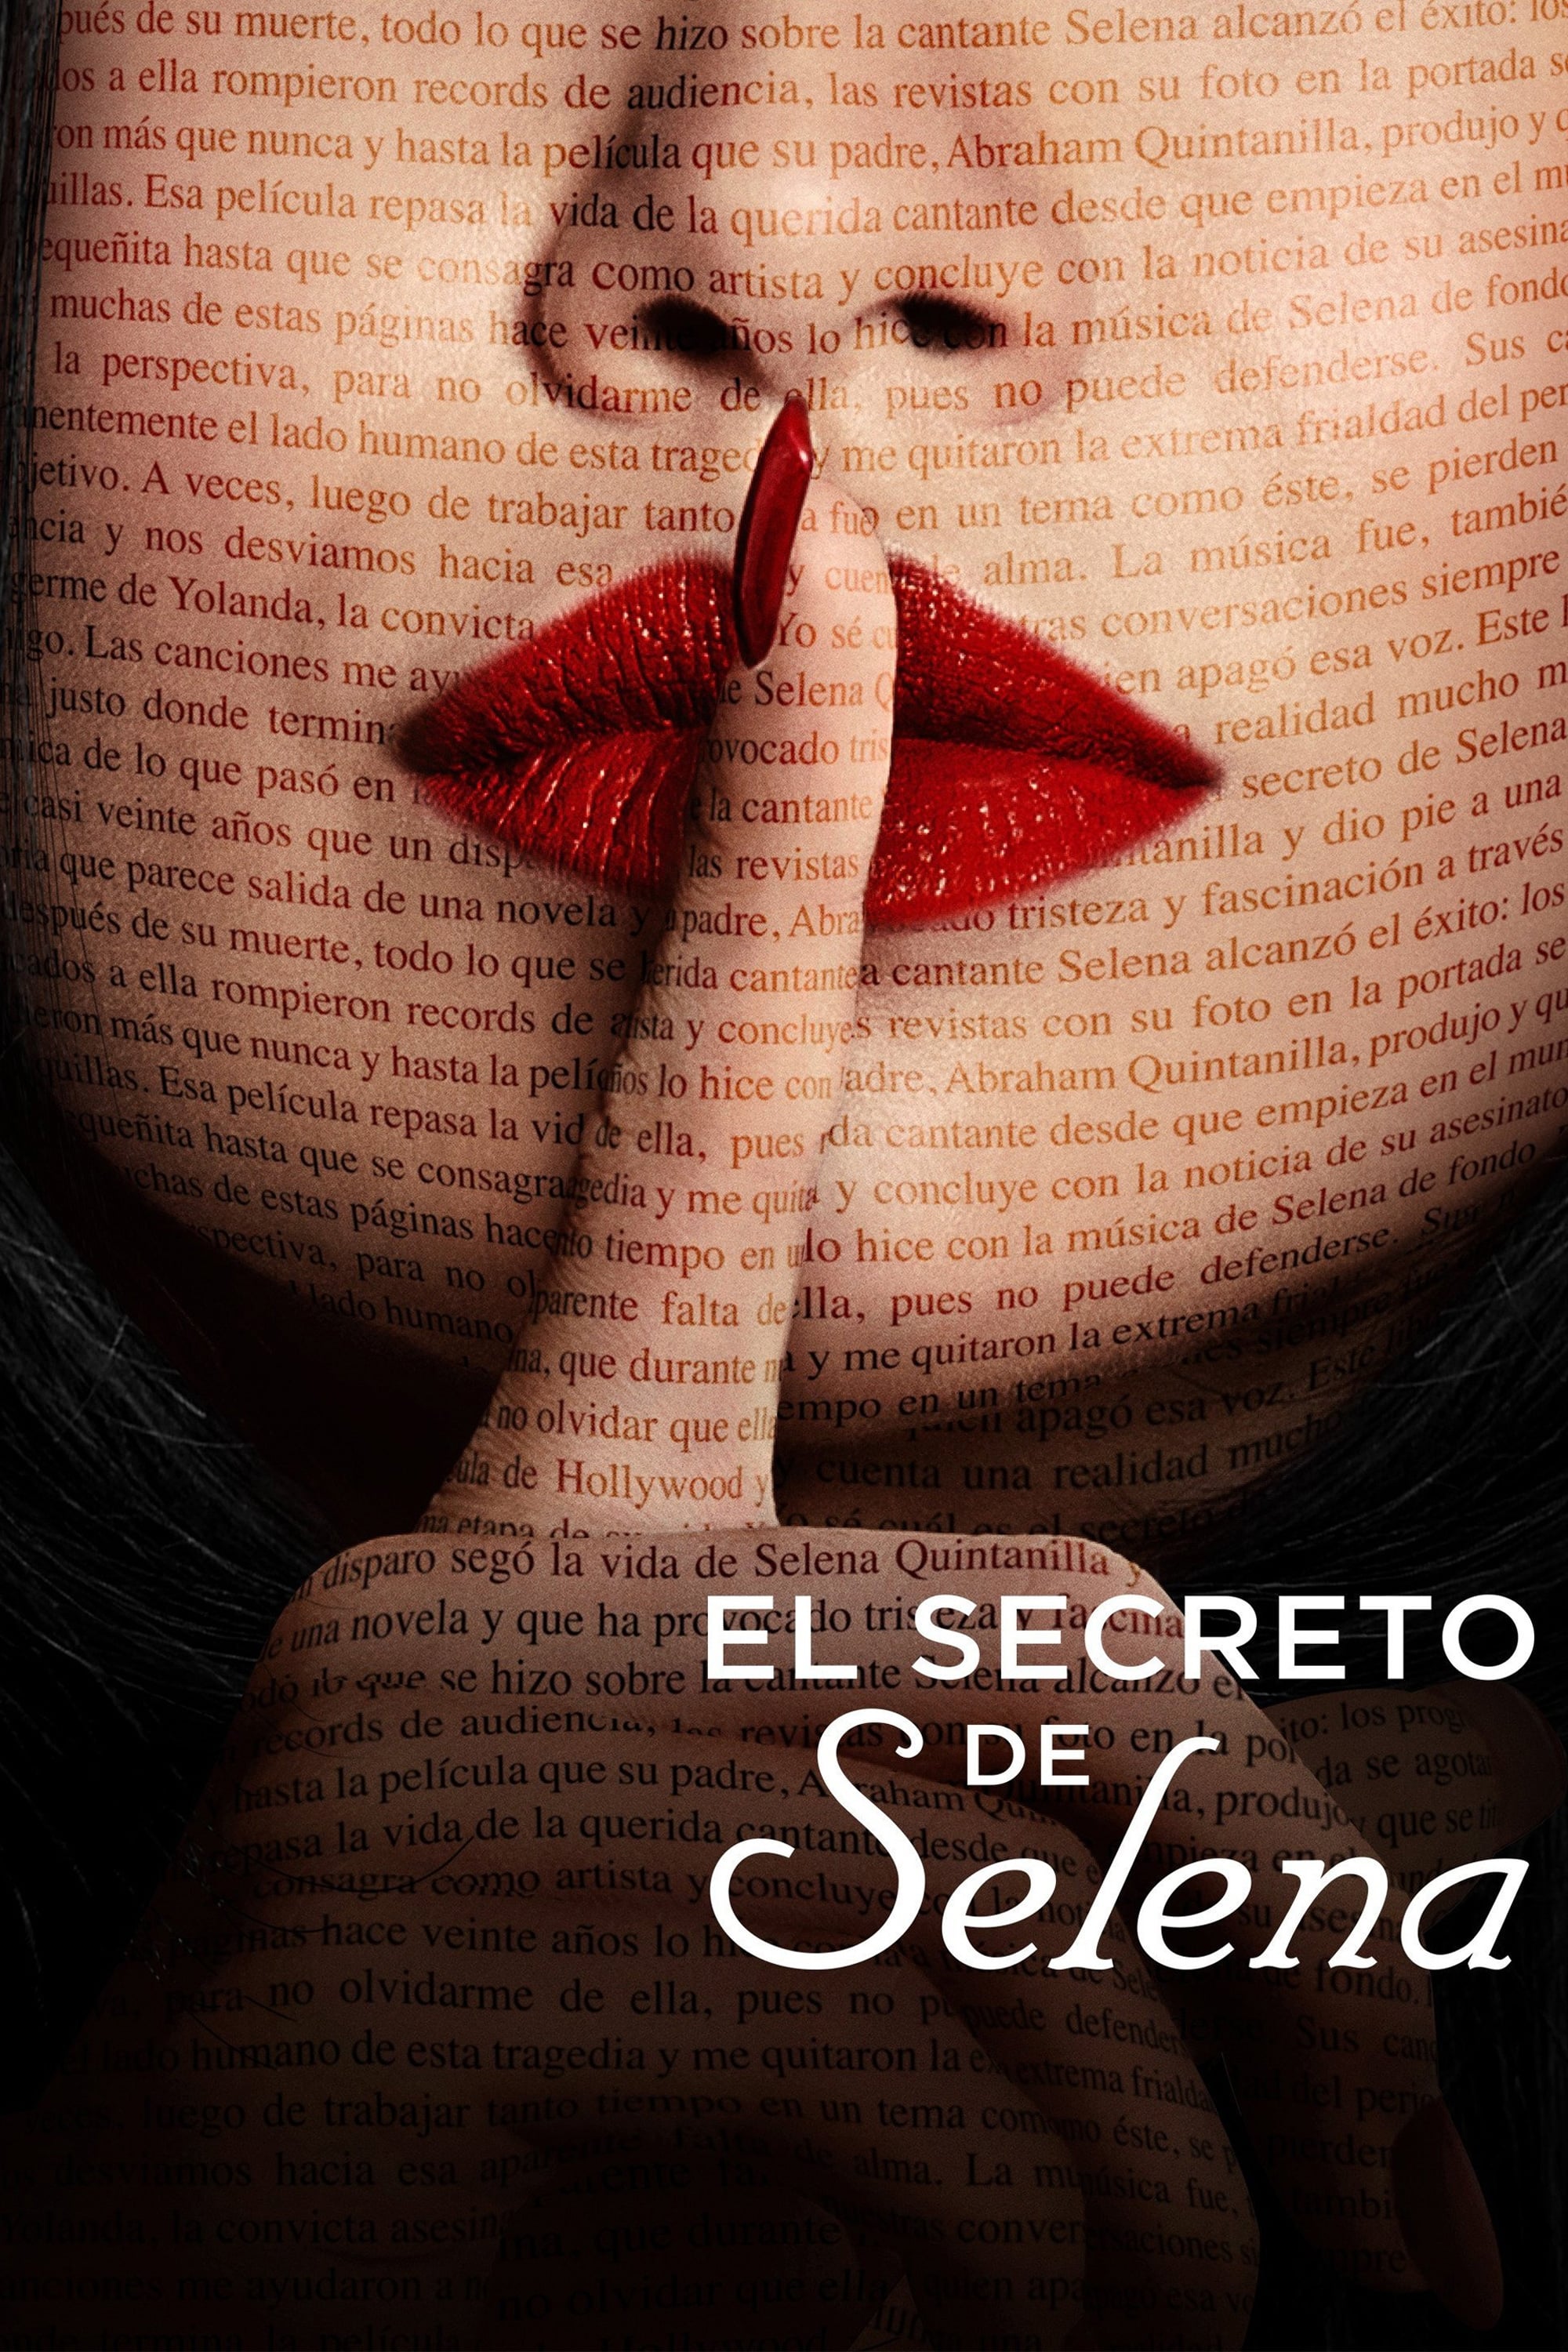 El secreto de Selena poster